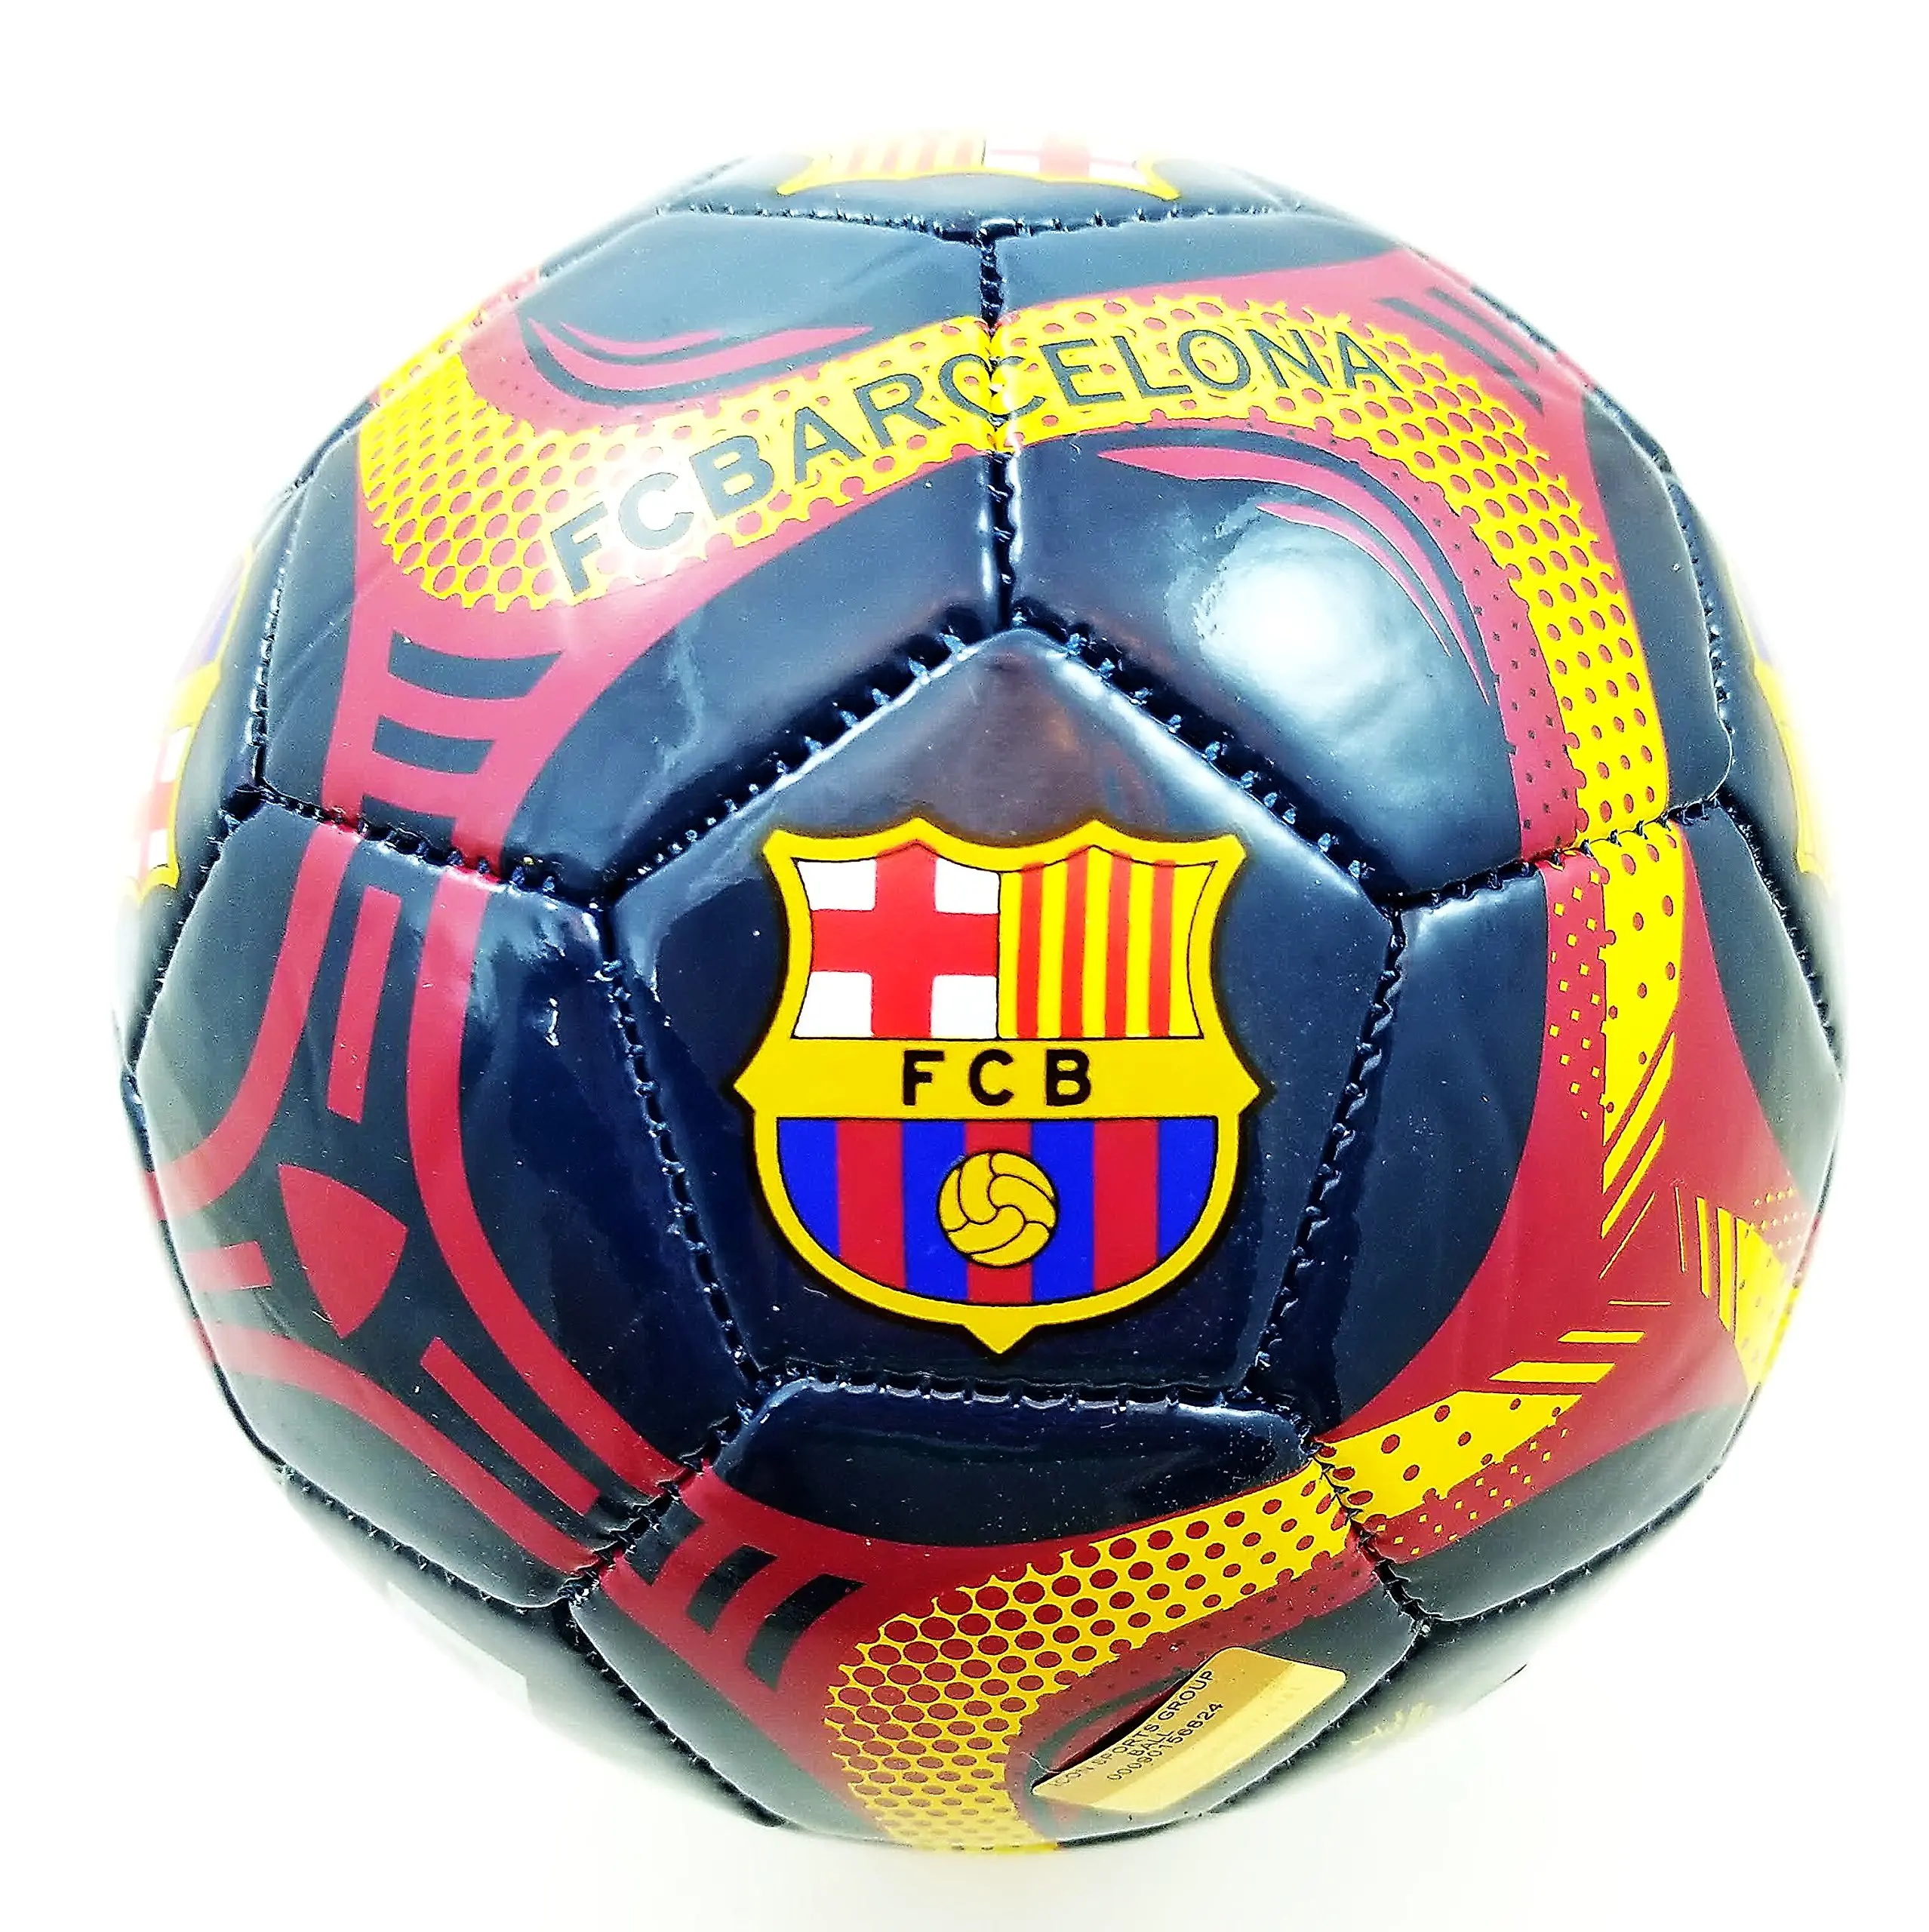 Мячи футбольные москва. Мяч футбольный Барселона. Мяч FC Barcelona. Барселона FCB мячик. Футбольный мяч Месси.